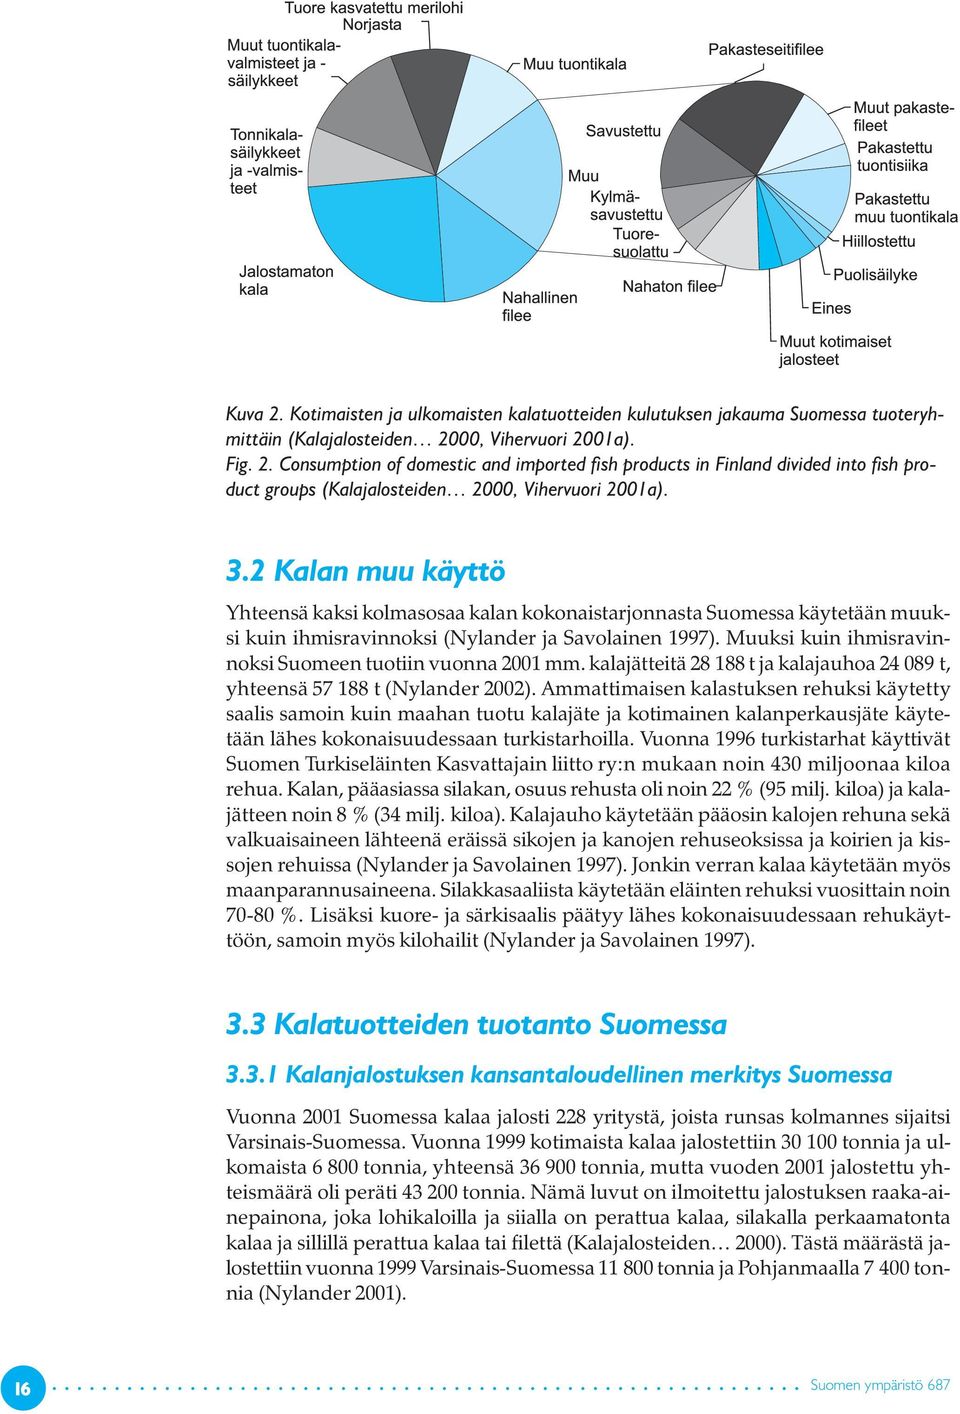 Muuksi kuin ihmisravinnoksi Suomeen tuotiin vuonna 2001 mm. kalajätteitä 28 188 t ja kalajauhoa 24 089 t, yhteensä 57 188 t (Nylander 2002).